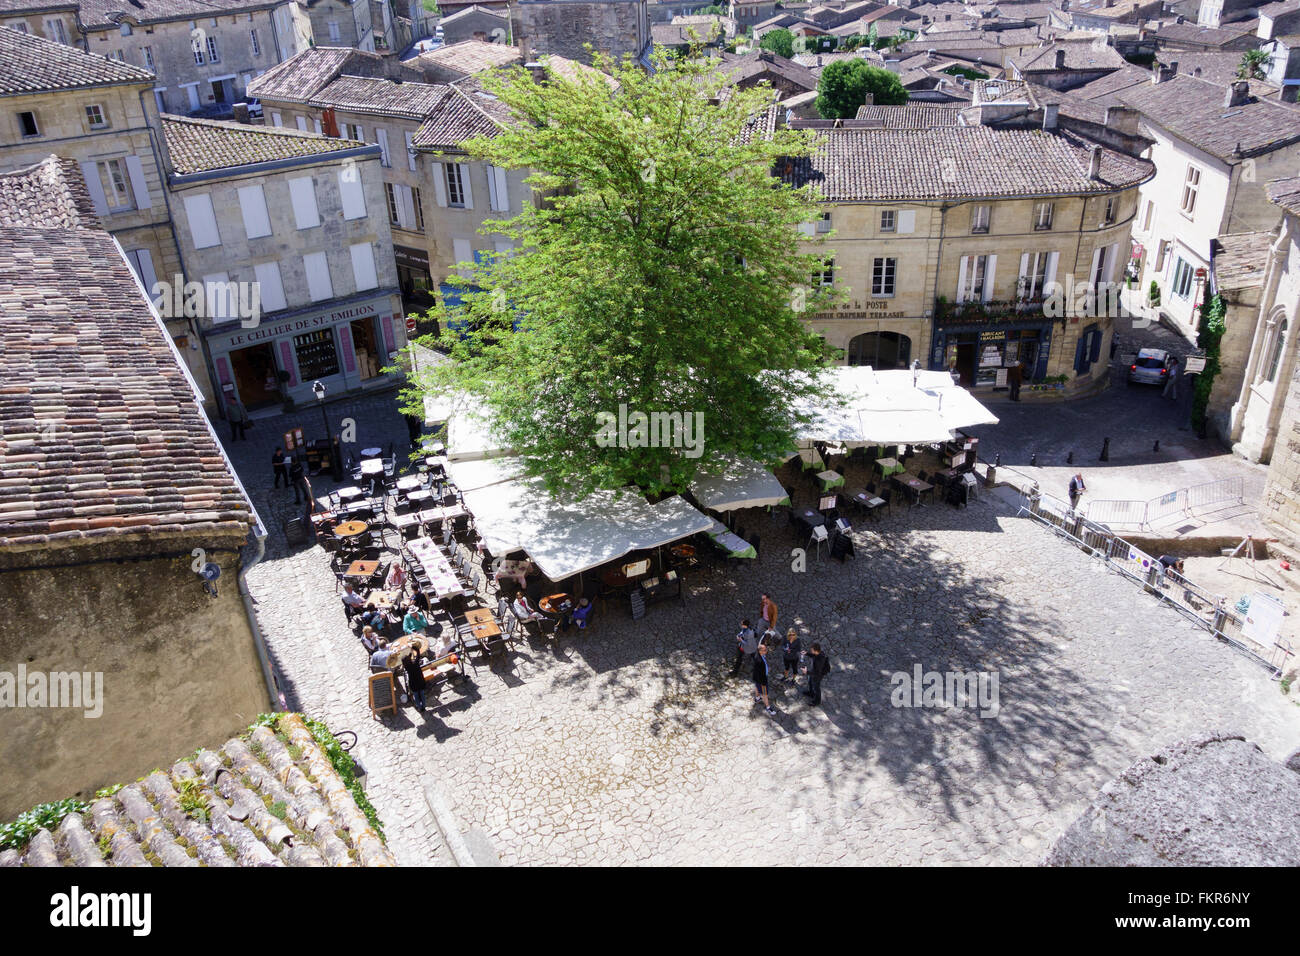 Menschen Essen im Freien im Ort de L'Eglise vergessen, Saint-Emilion, Gironde, Frankreich Stockfoto